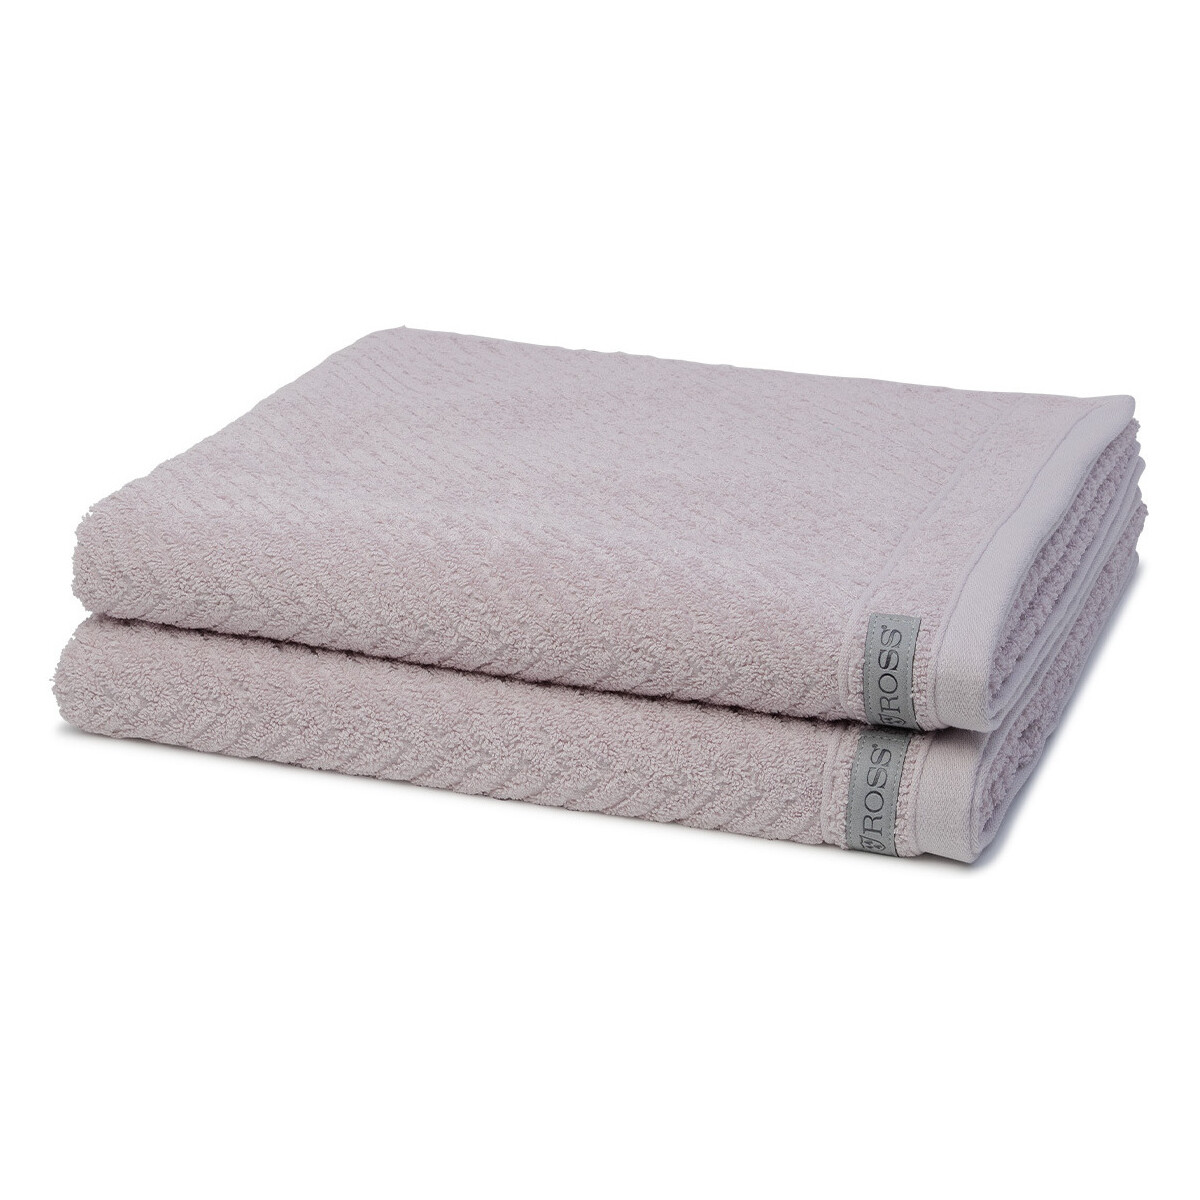 Home Handtuch und Waschlappen Ross Smart Grau